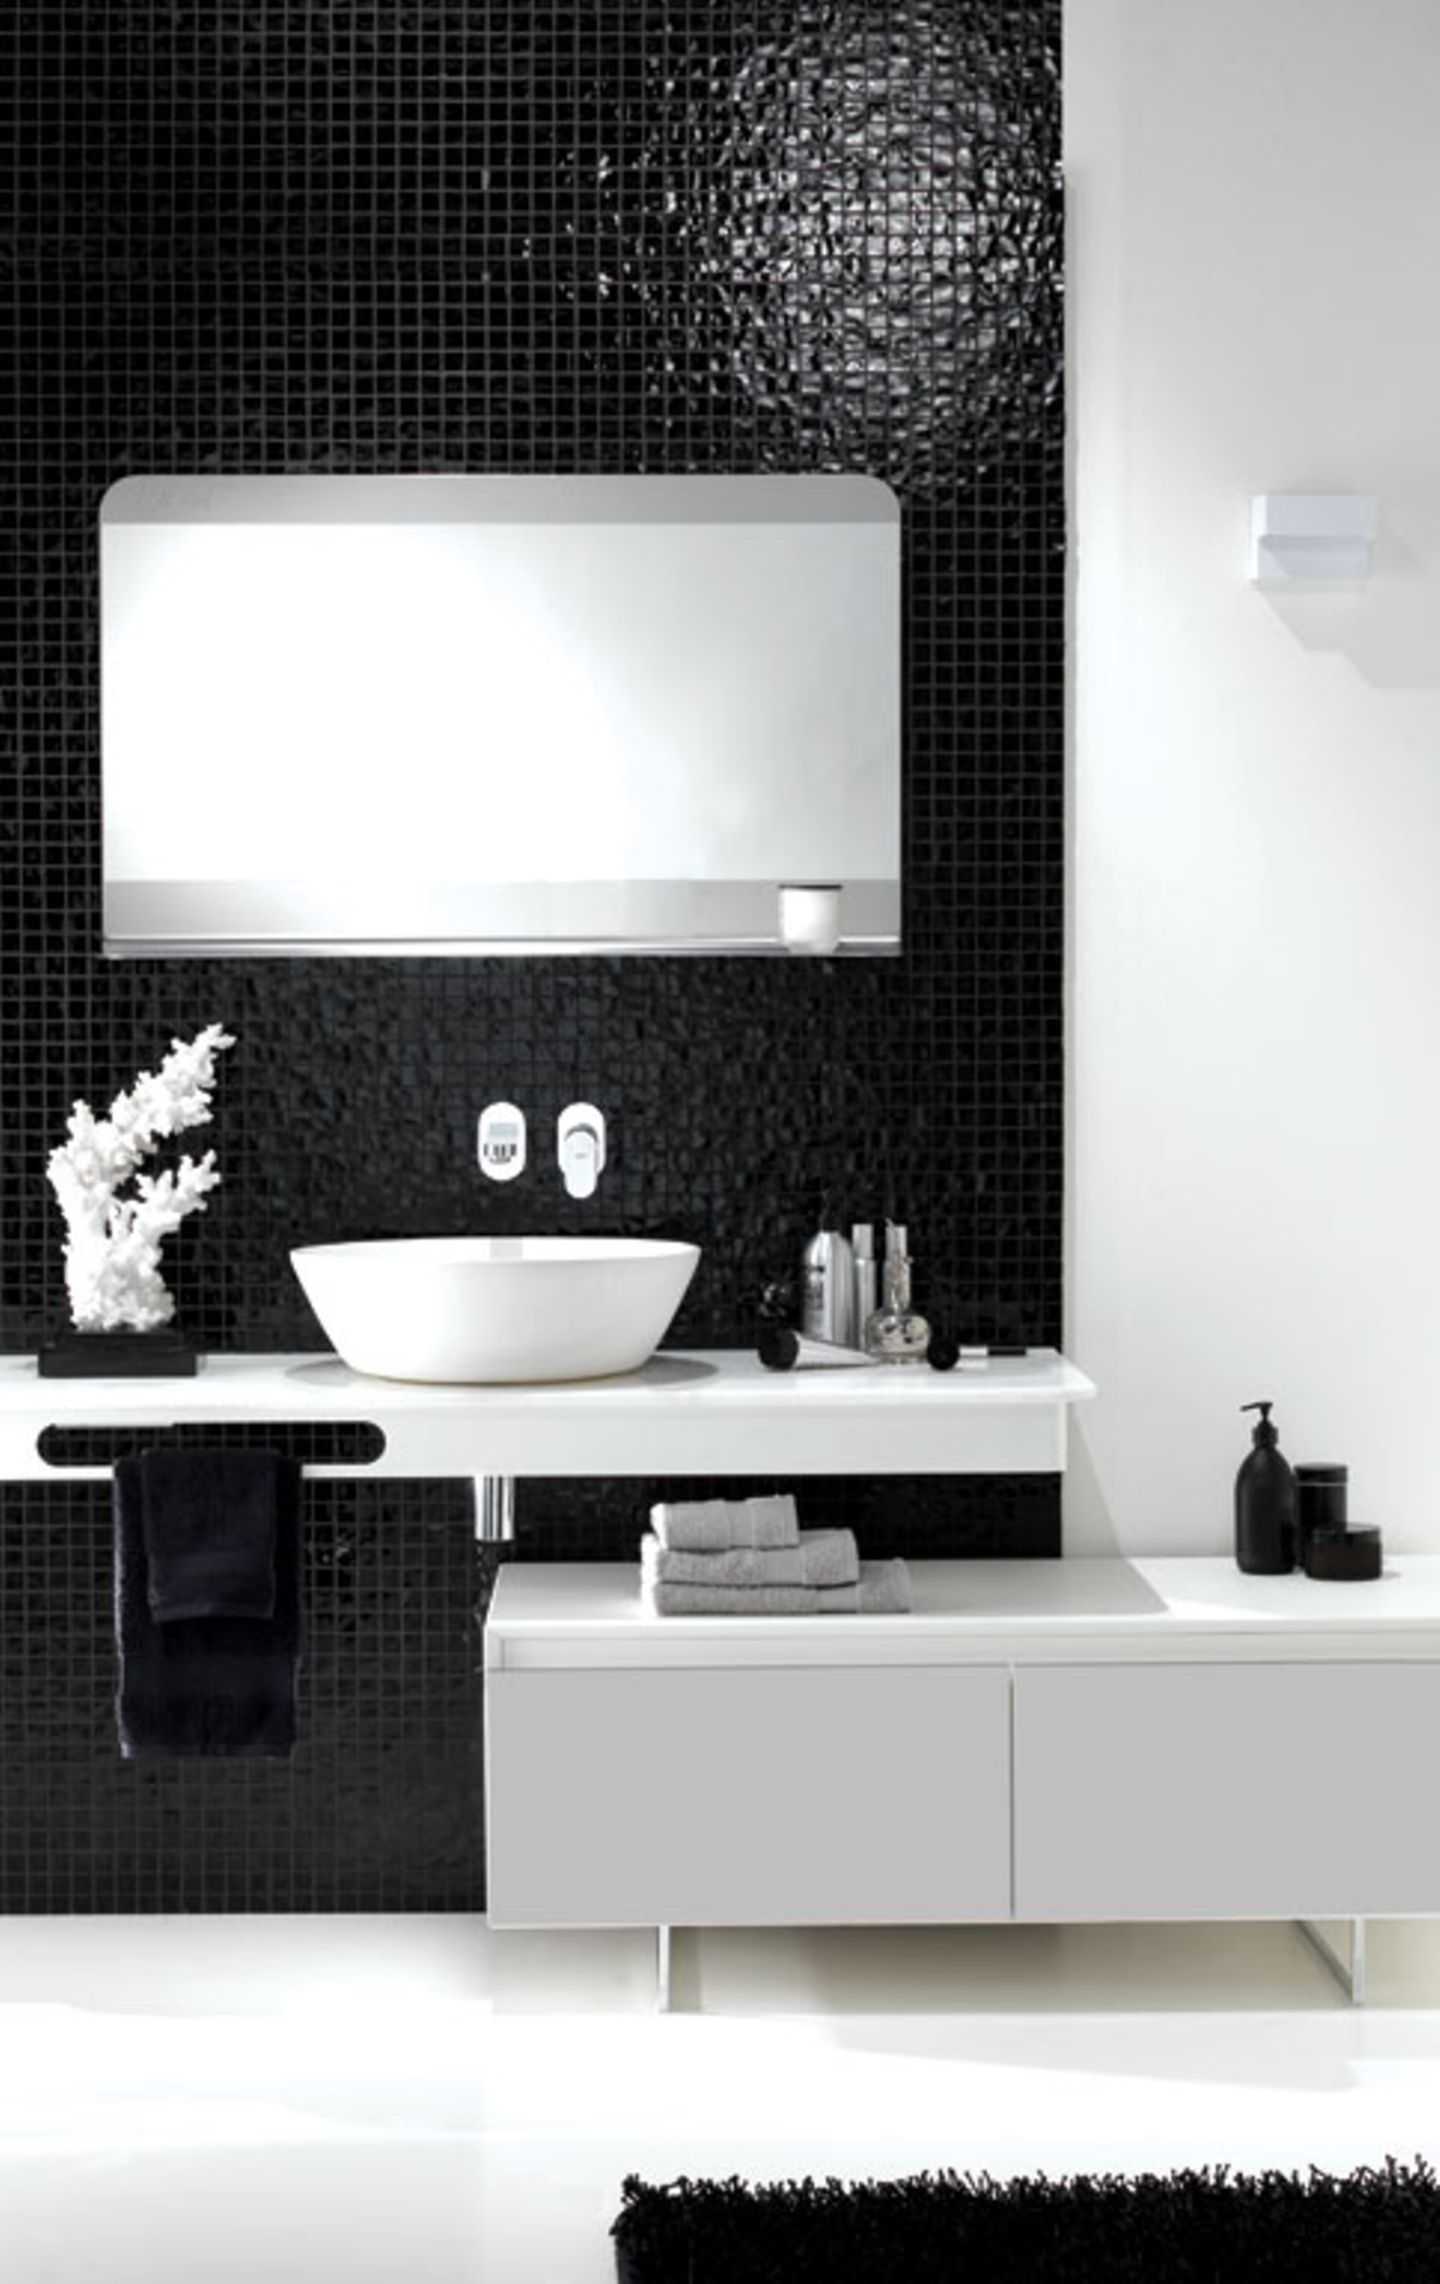 Badezimmer von Ex.T. in Schwarz und Weiß